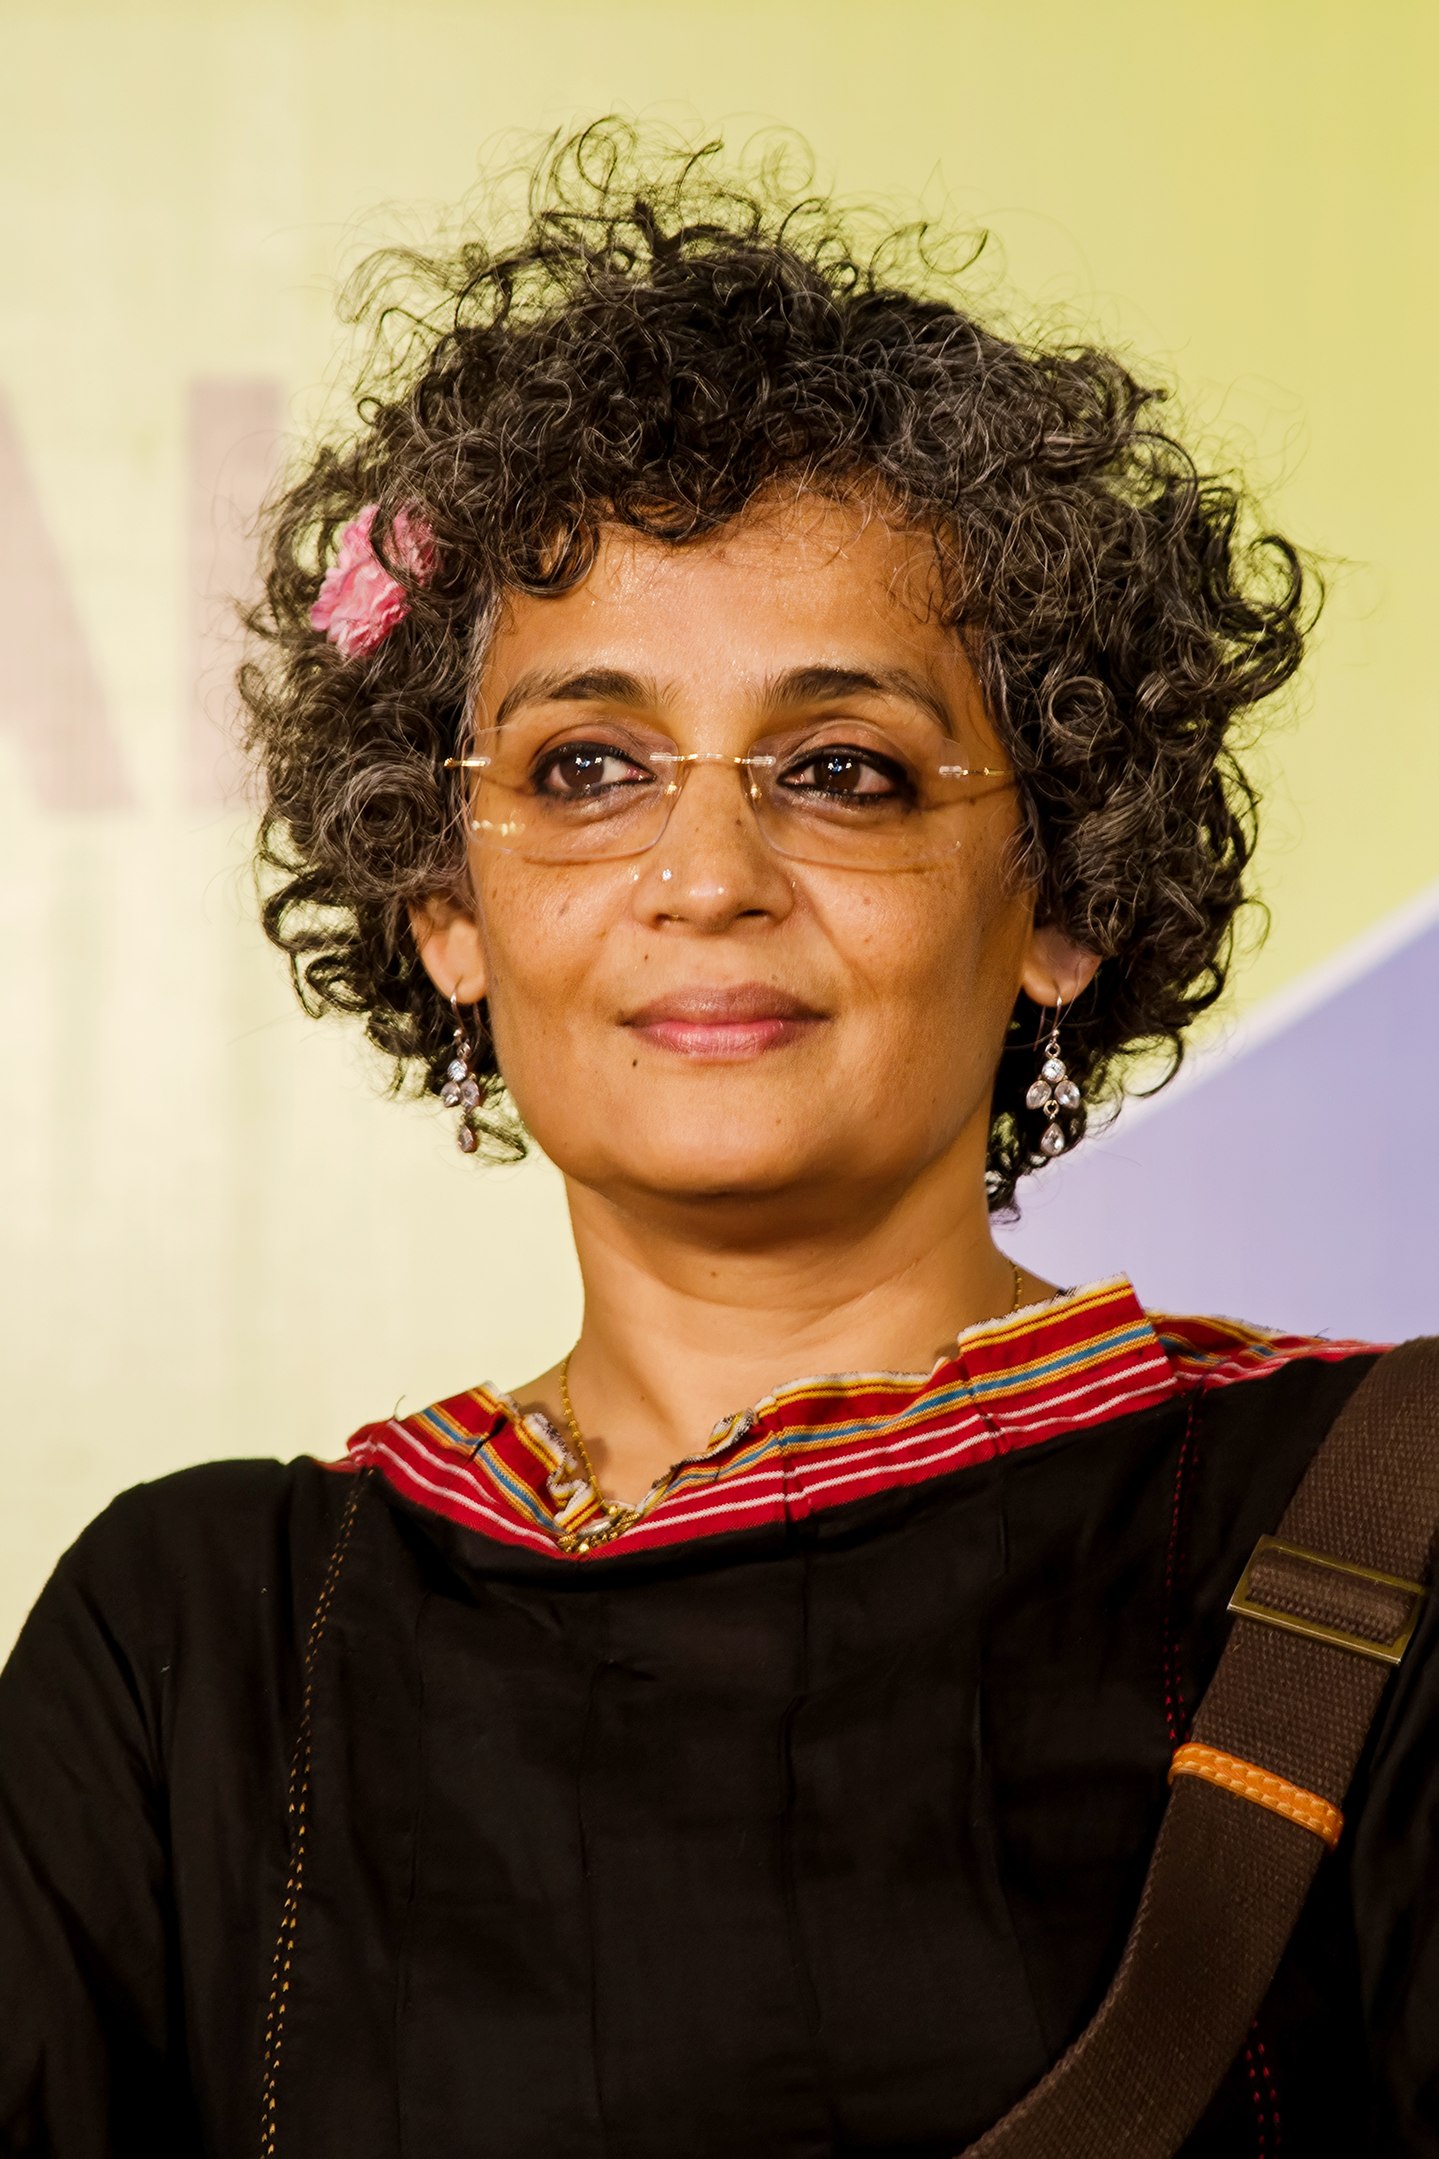 الكاتبة الهندية أرونداتي روي - روائية وكاتبة مقالات غزيرة الإنتاج حائزة على جائزة البوكر. Arundhati Roy 2013 Foto Wikipedia CC BY-SA 3.0